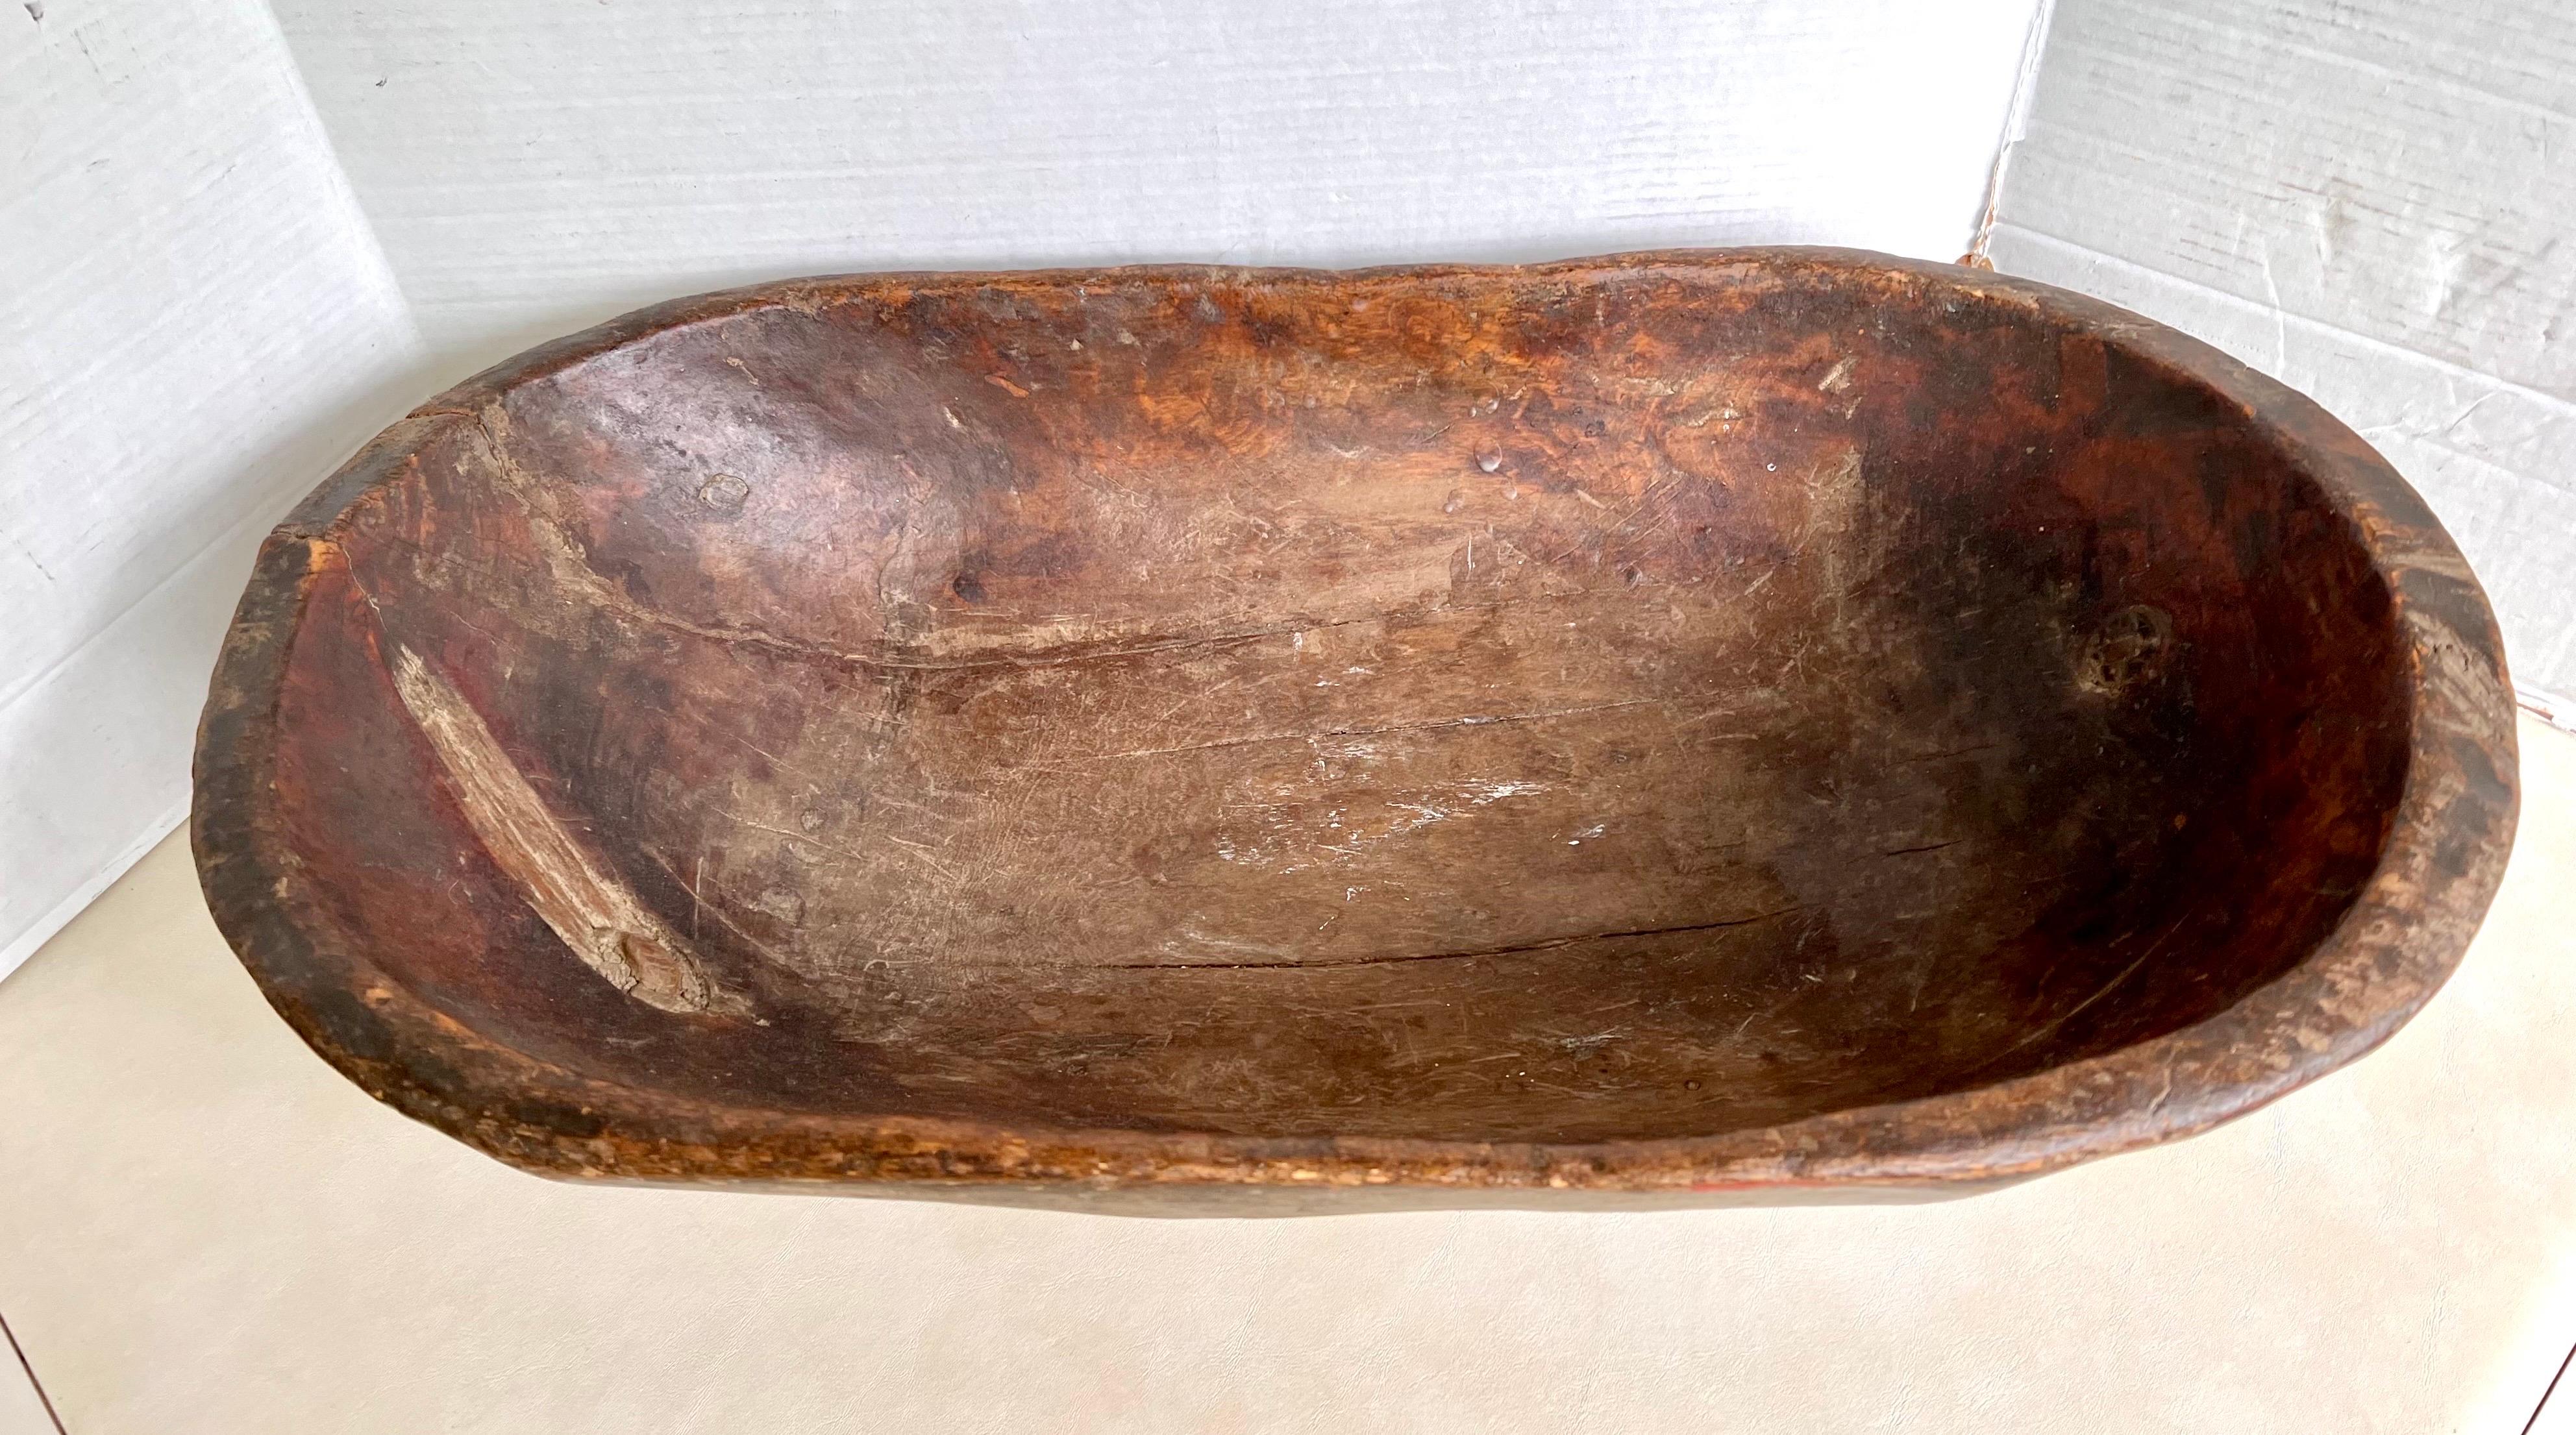 Grand bol à pâte en bois sculpté à la main à partir d'une seule pièce de bois. Possède une belle patine acquise uniquement grâce à son âge et à son utilisation.